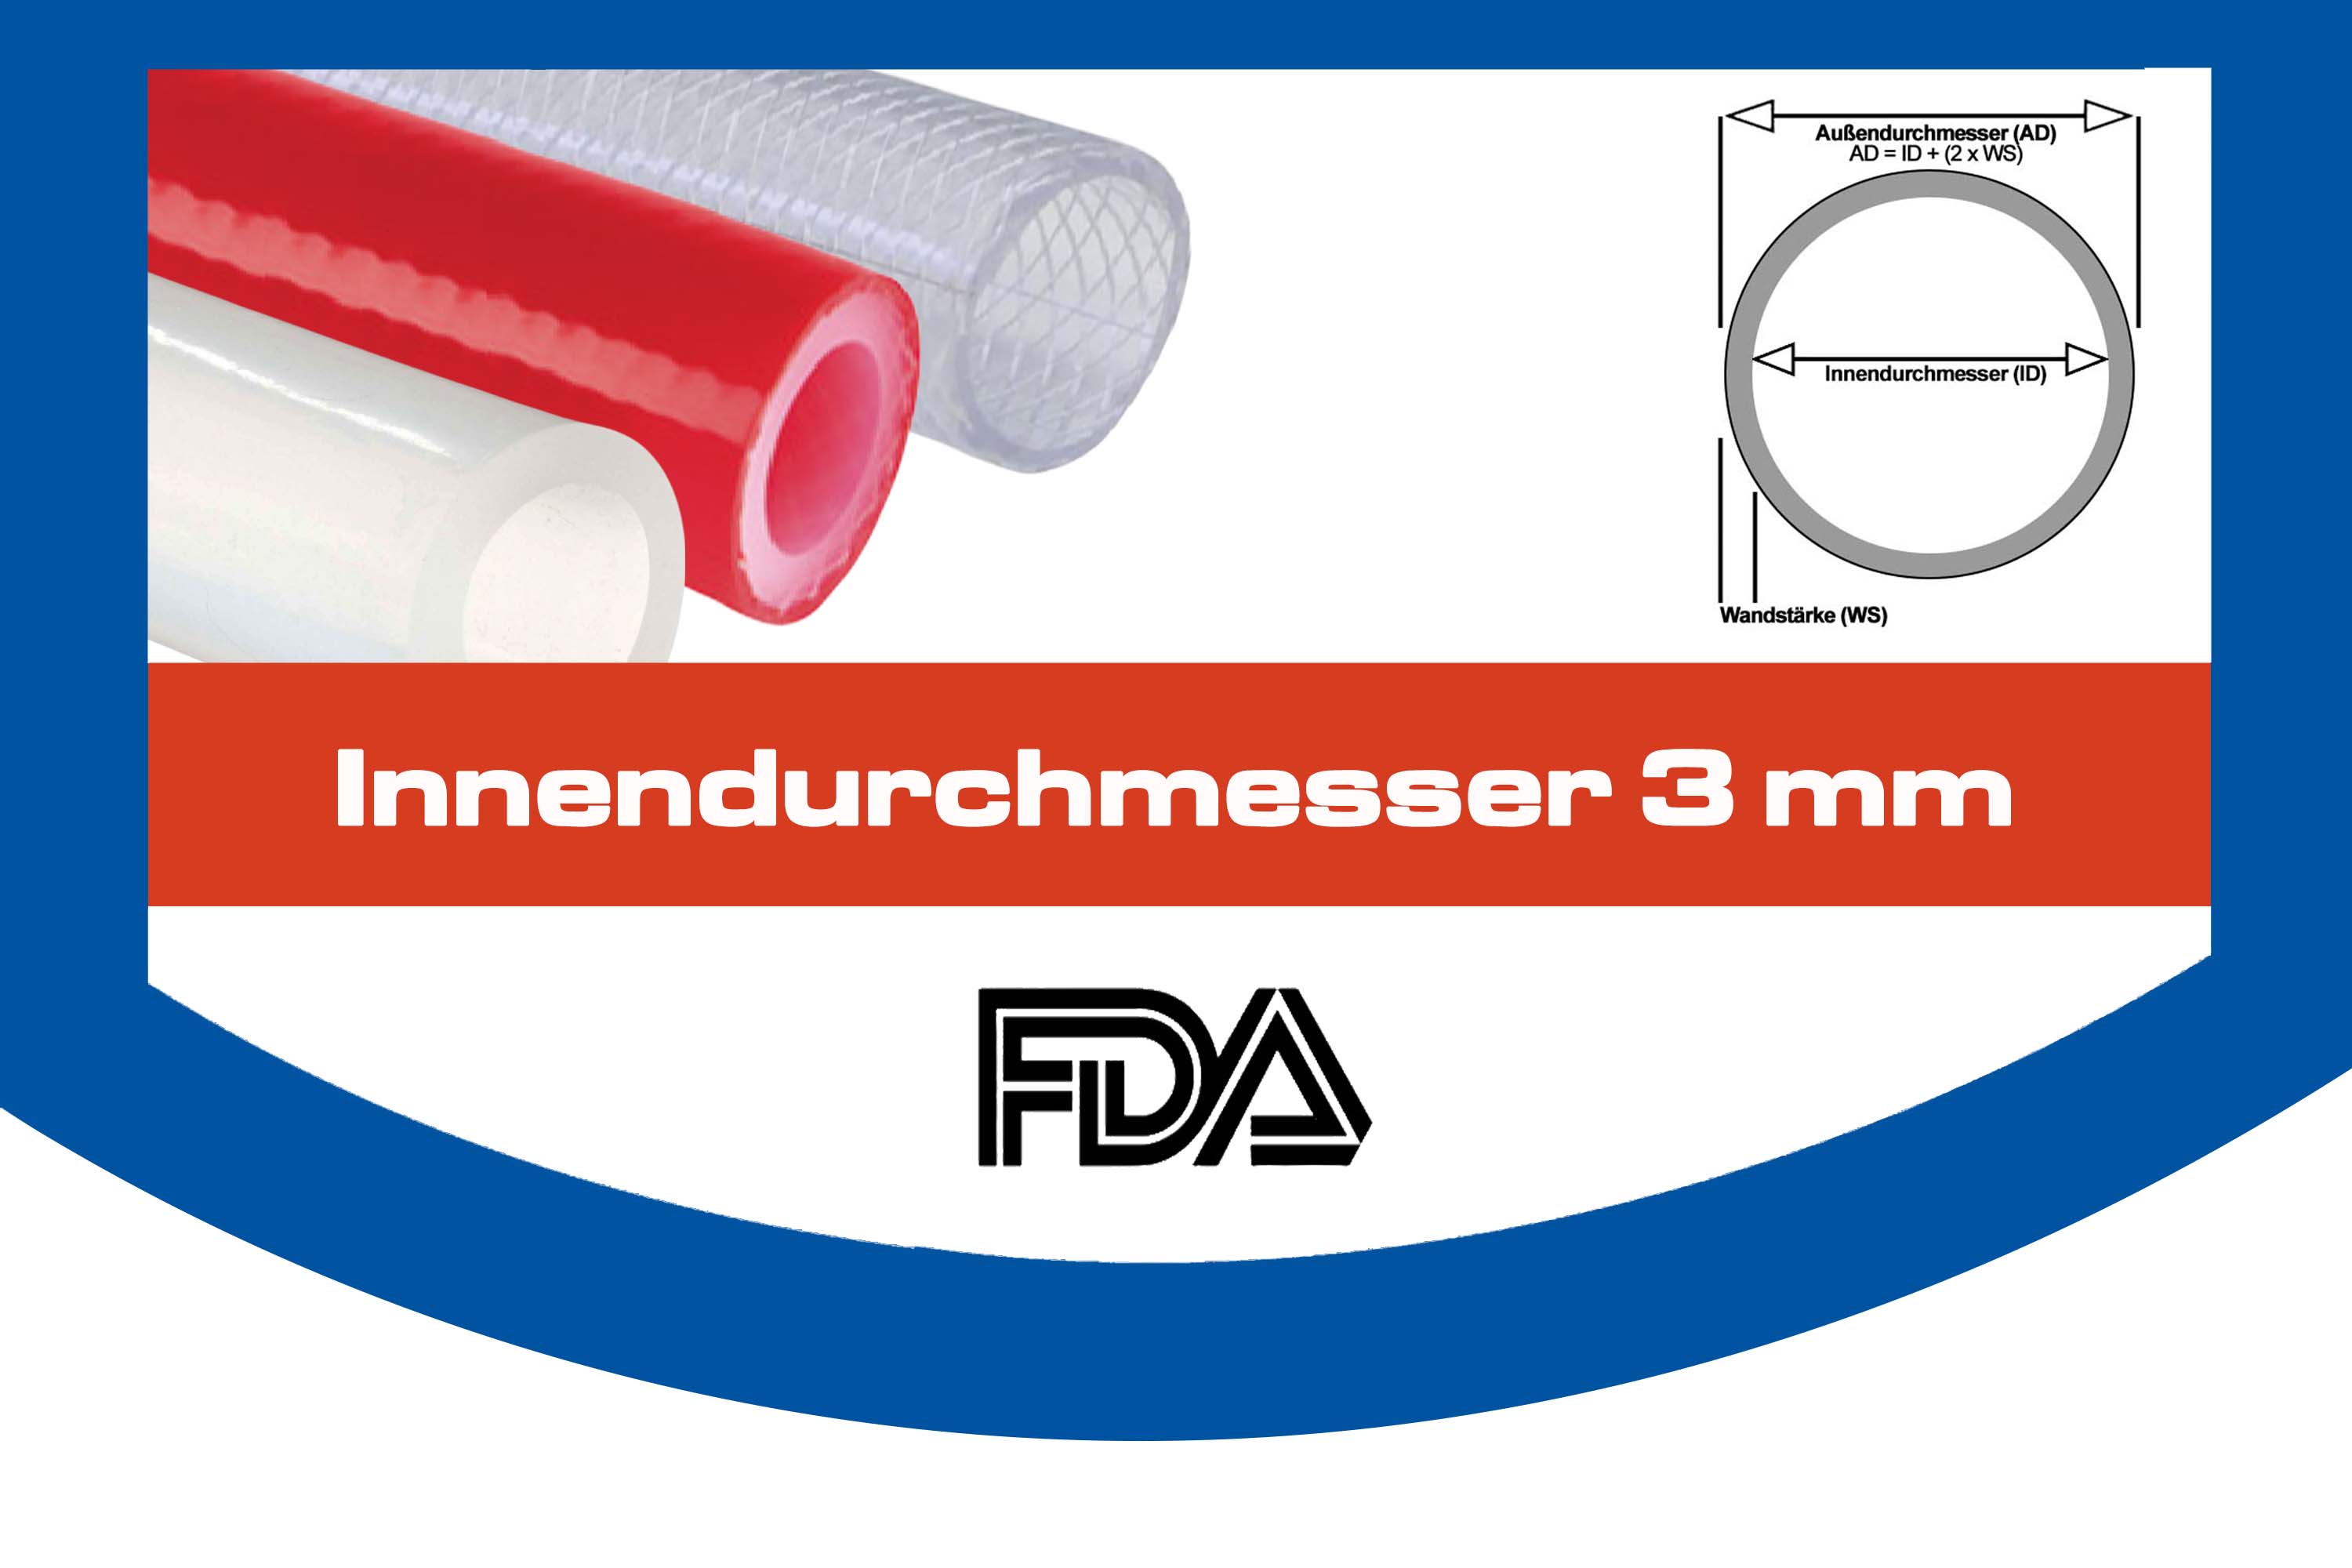 Silikonschlauch FDA Lebensmittelecht. Top Qualität mit Innendurchmesser 3 mm